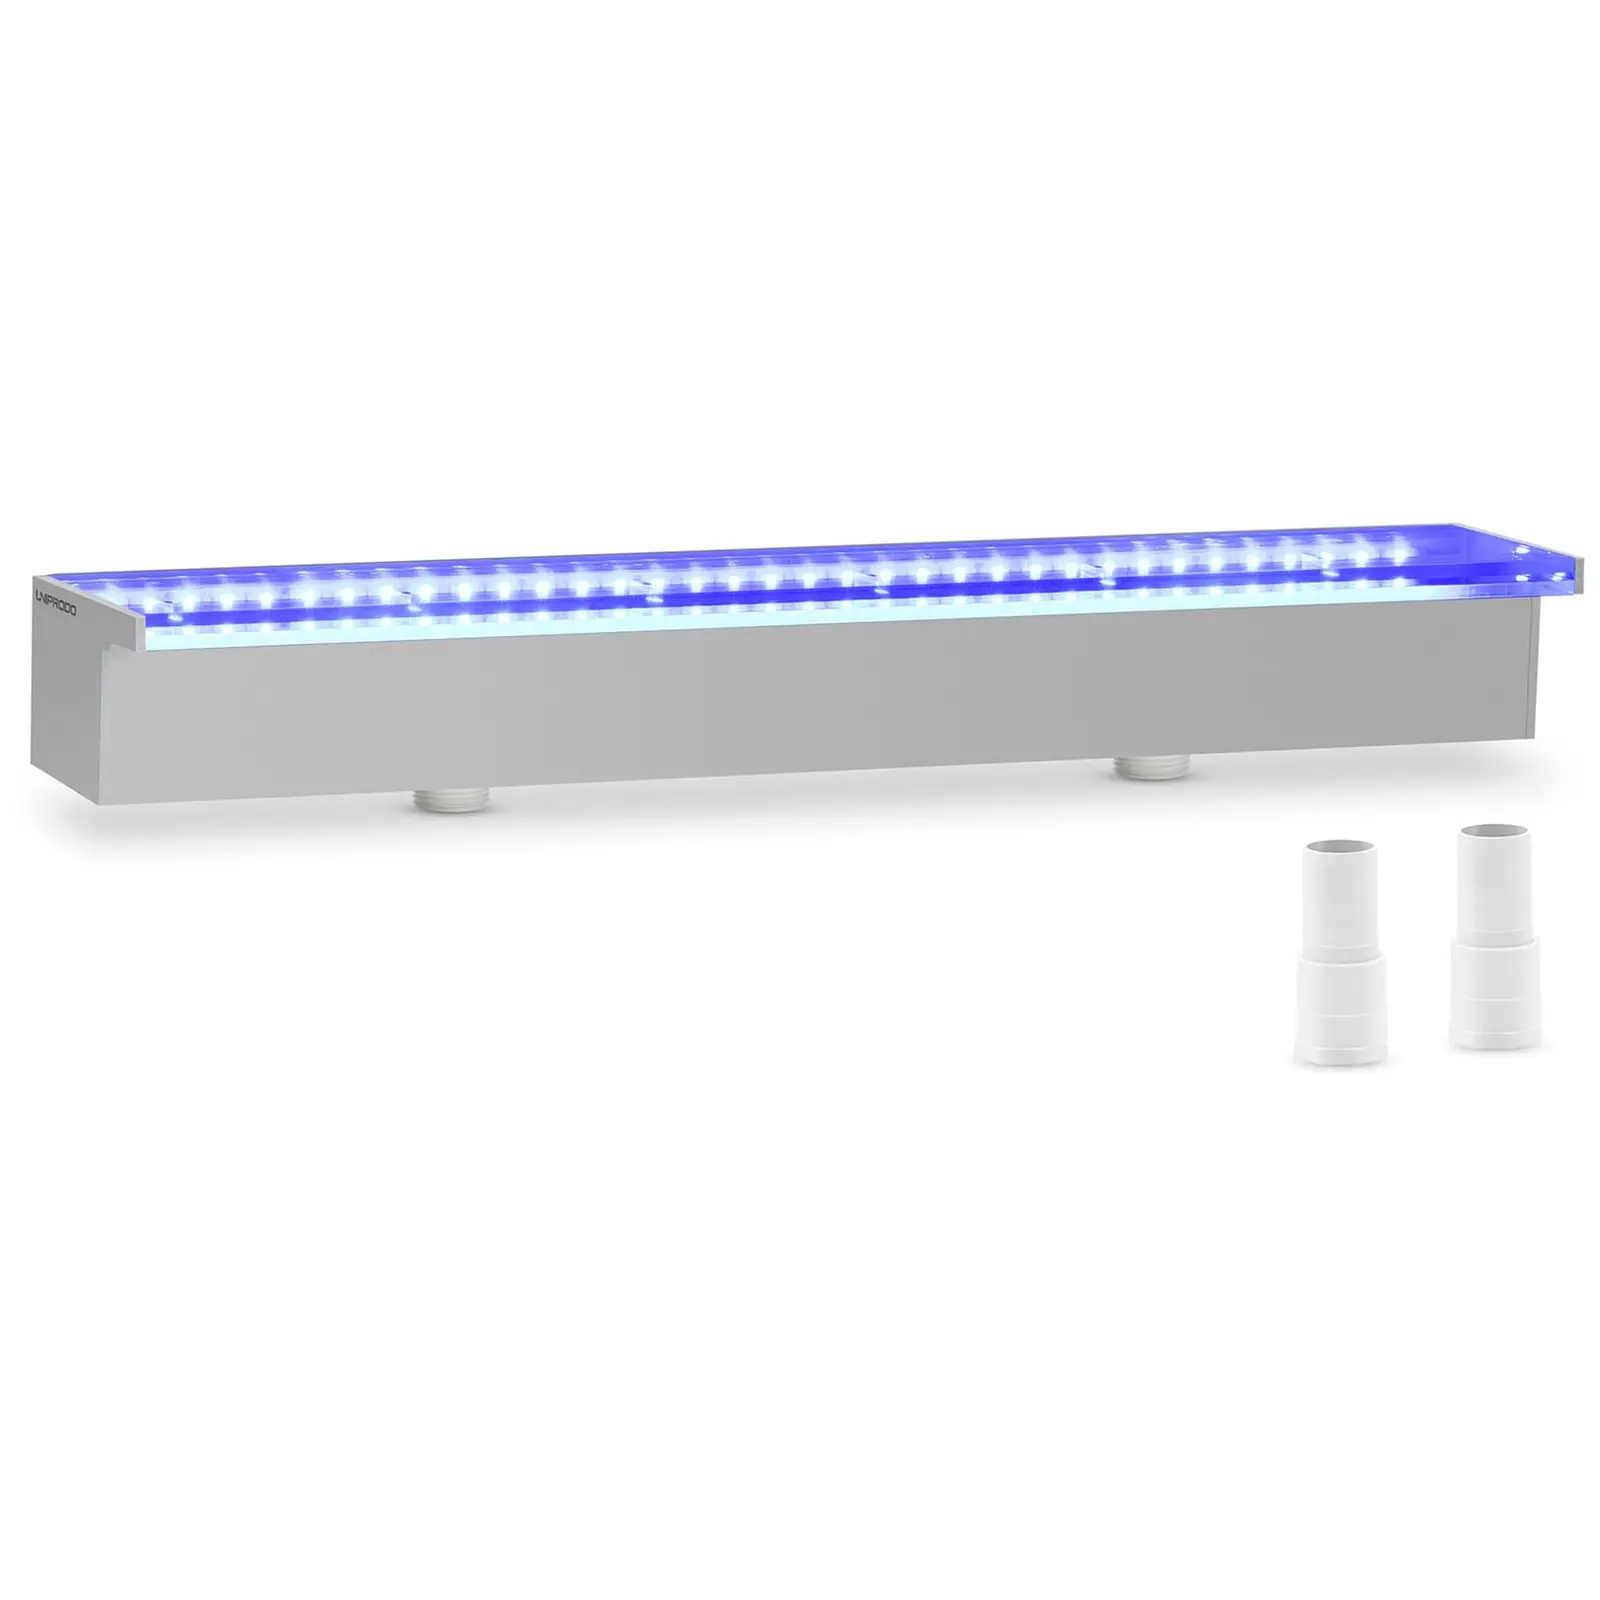 Schwalldusche - 60 cm - LED-Beleuchtung - Blau / Weiß - 30 mm Wasserauslauf